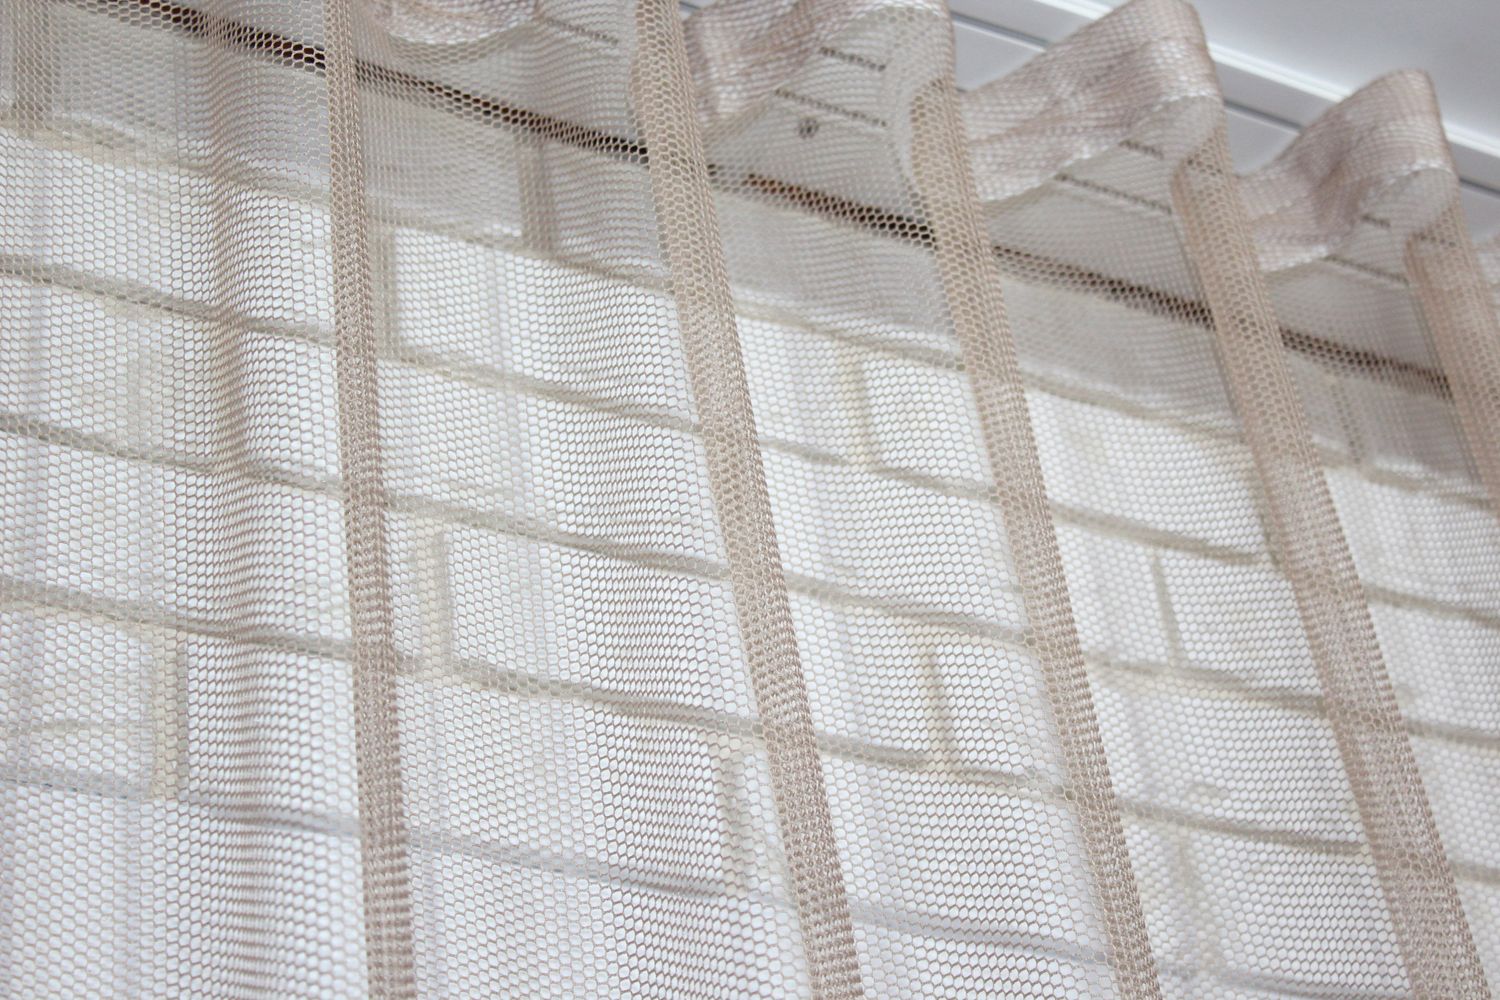 Тюль грек-сетка однотонная, коллекция "Грек Соты", высотой 3м цвет какао 956т, Тюль на метраж, Нужную Вам ширину указывайте при покупке. (Ширина набирается по длине рулона.), 3 м.